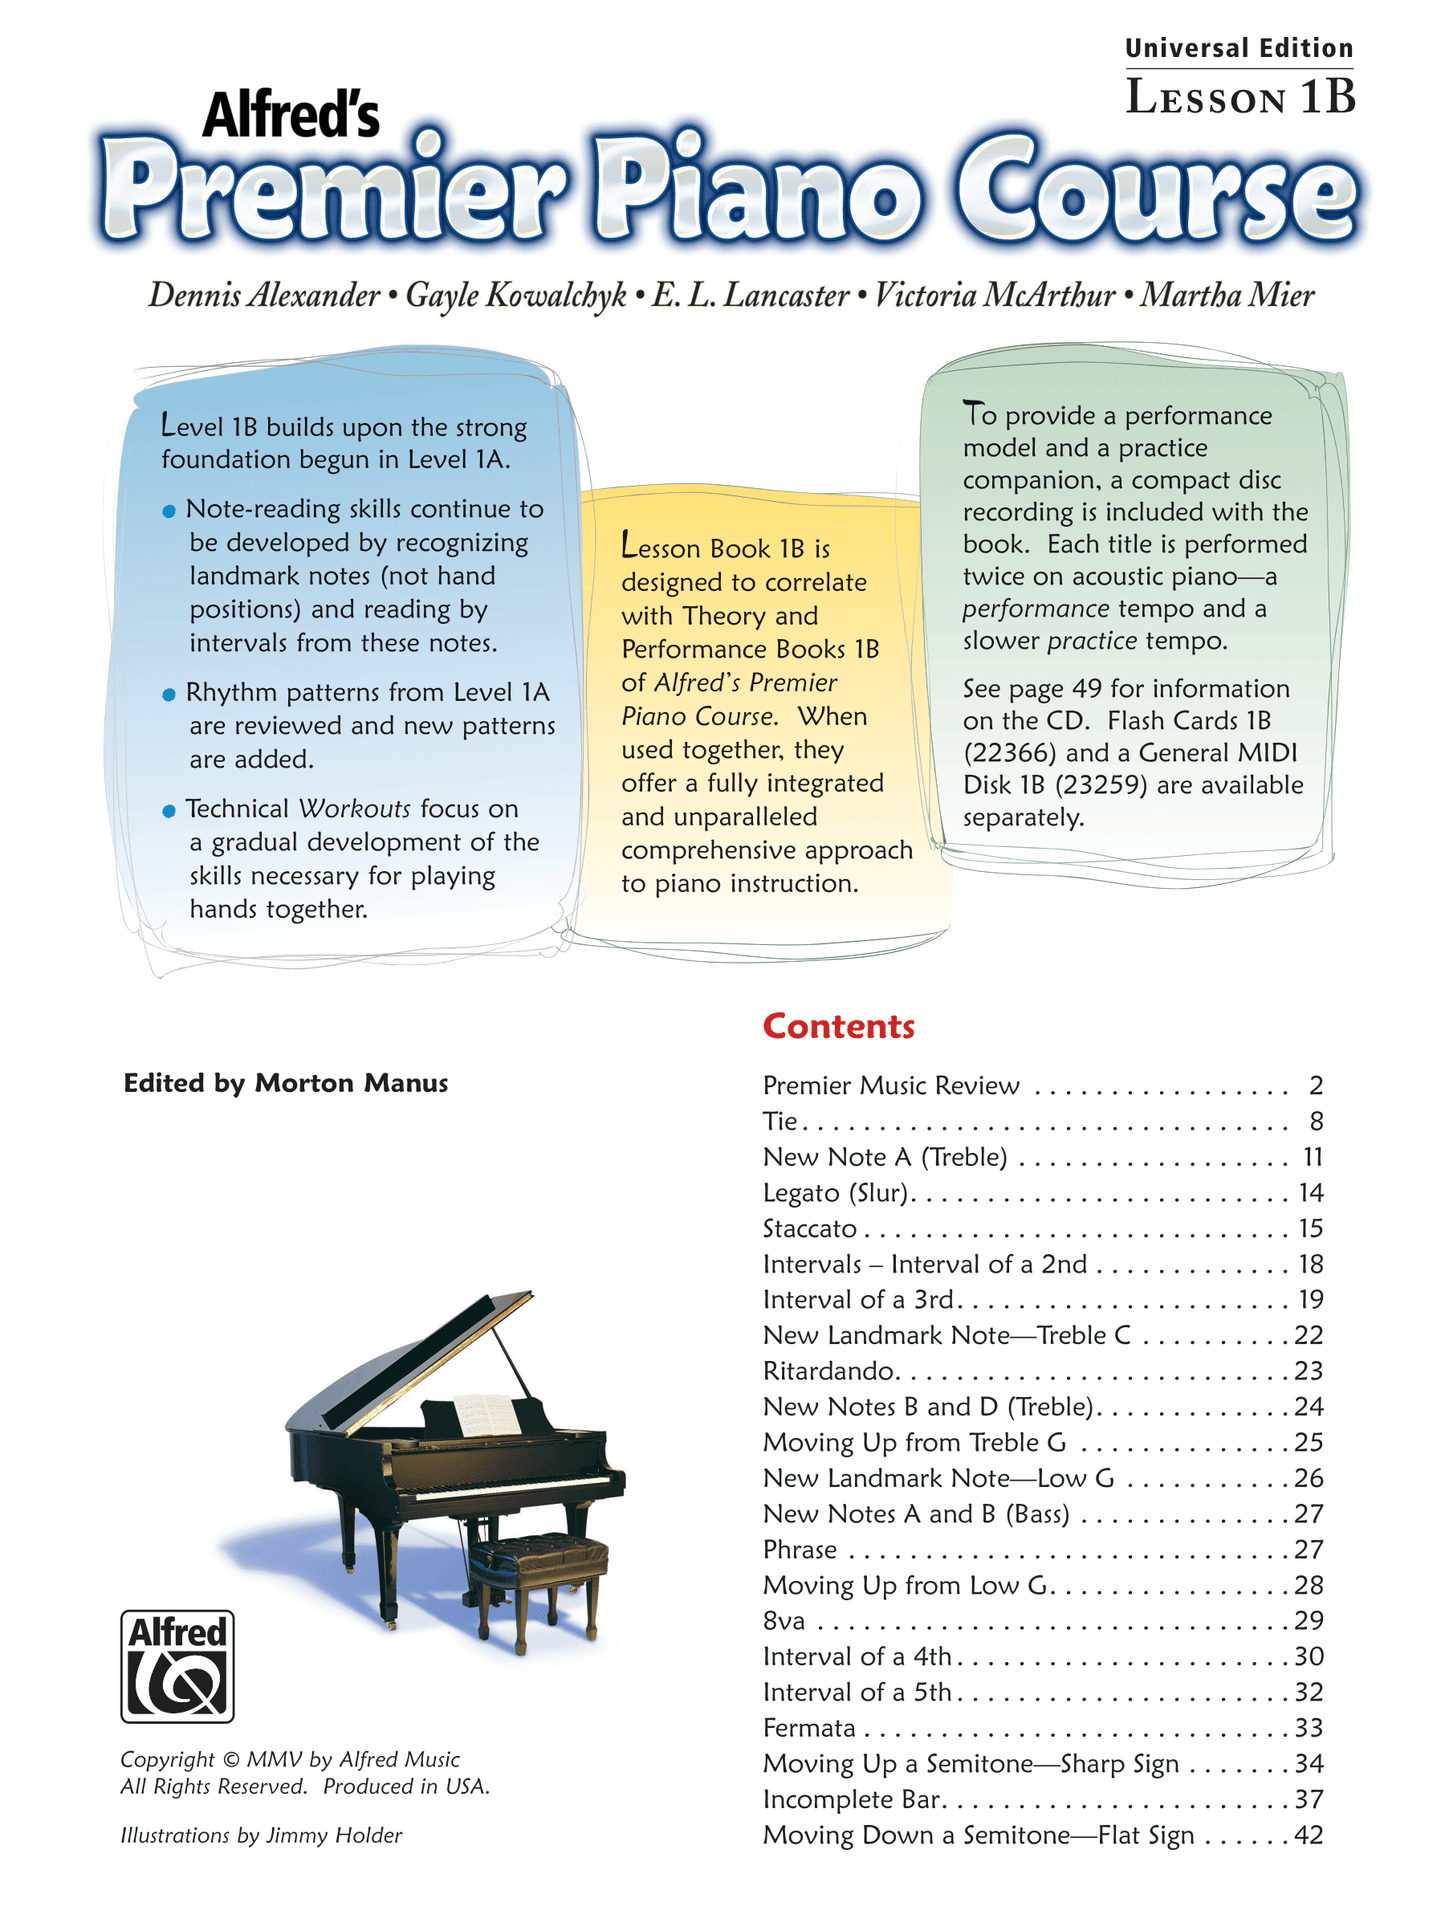 Alfred's Premier Piano Course Lesson Level 1B Book/Cd (Universal Edition)